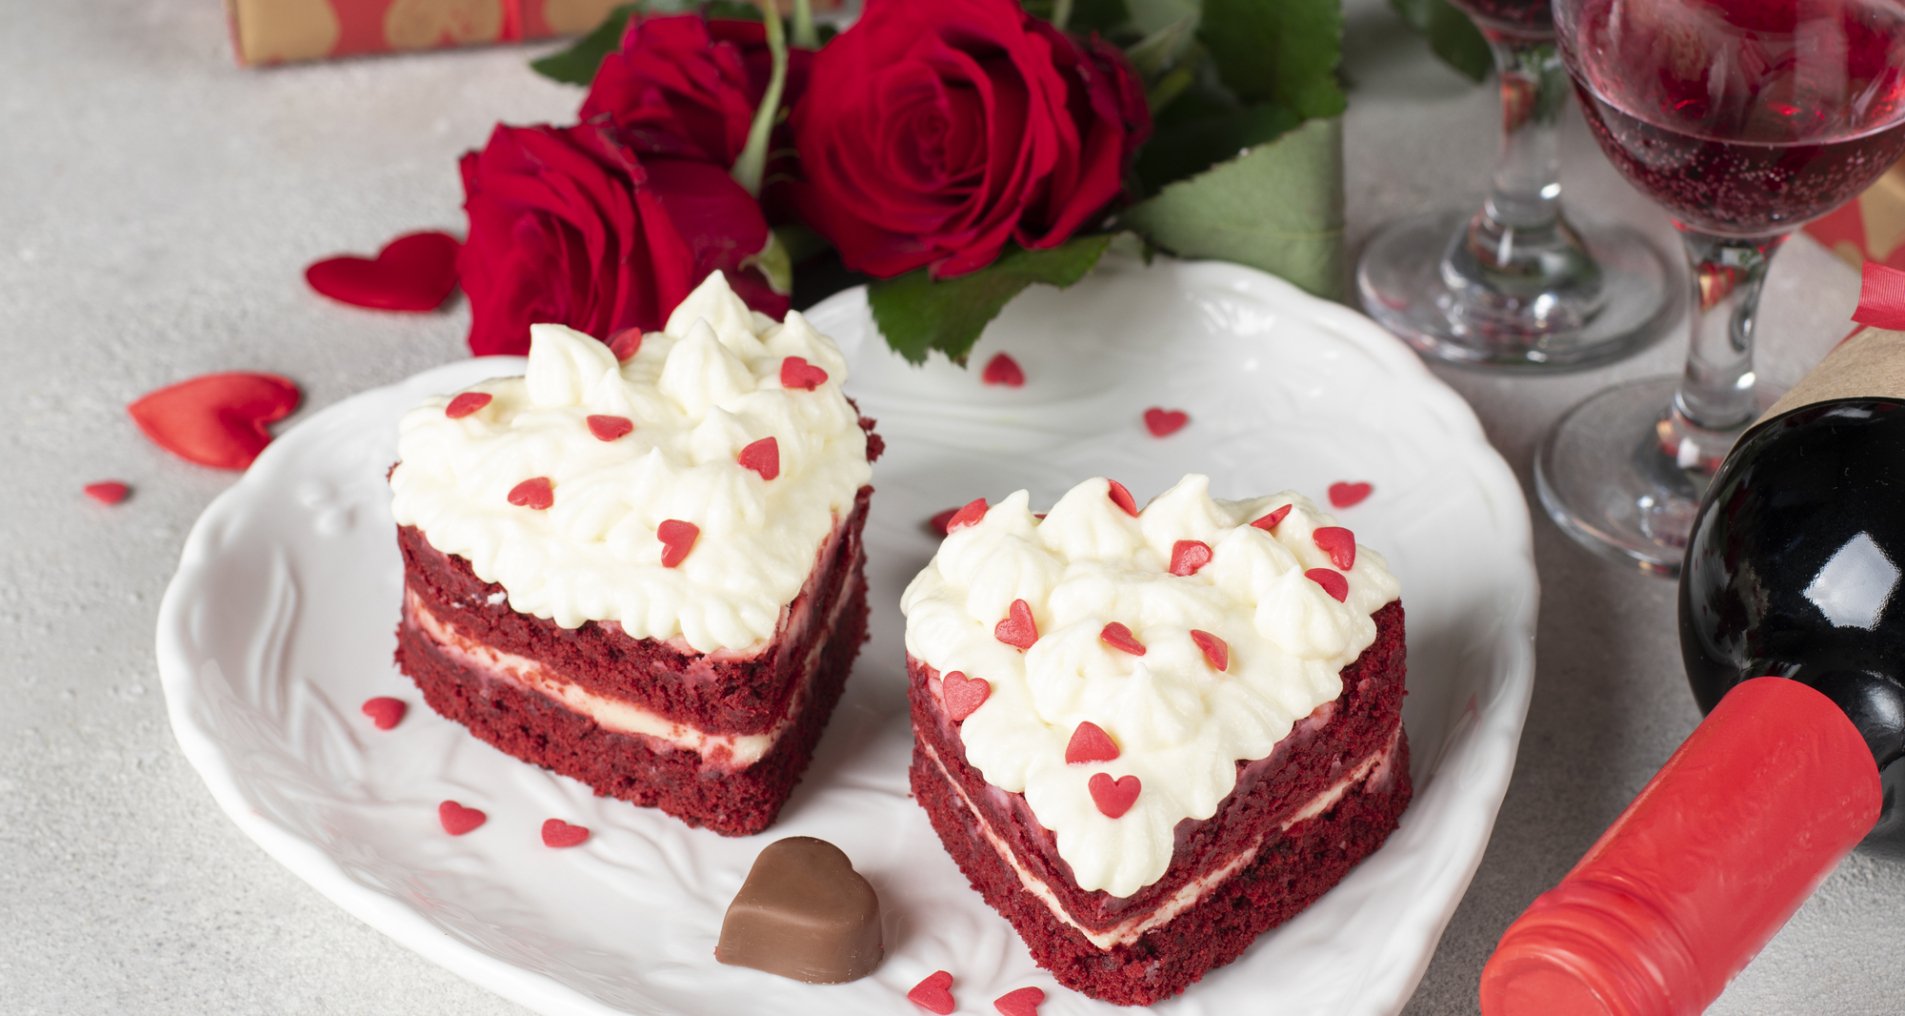 Лучшие блюда для романтического ужина на День святого Валентина